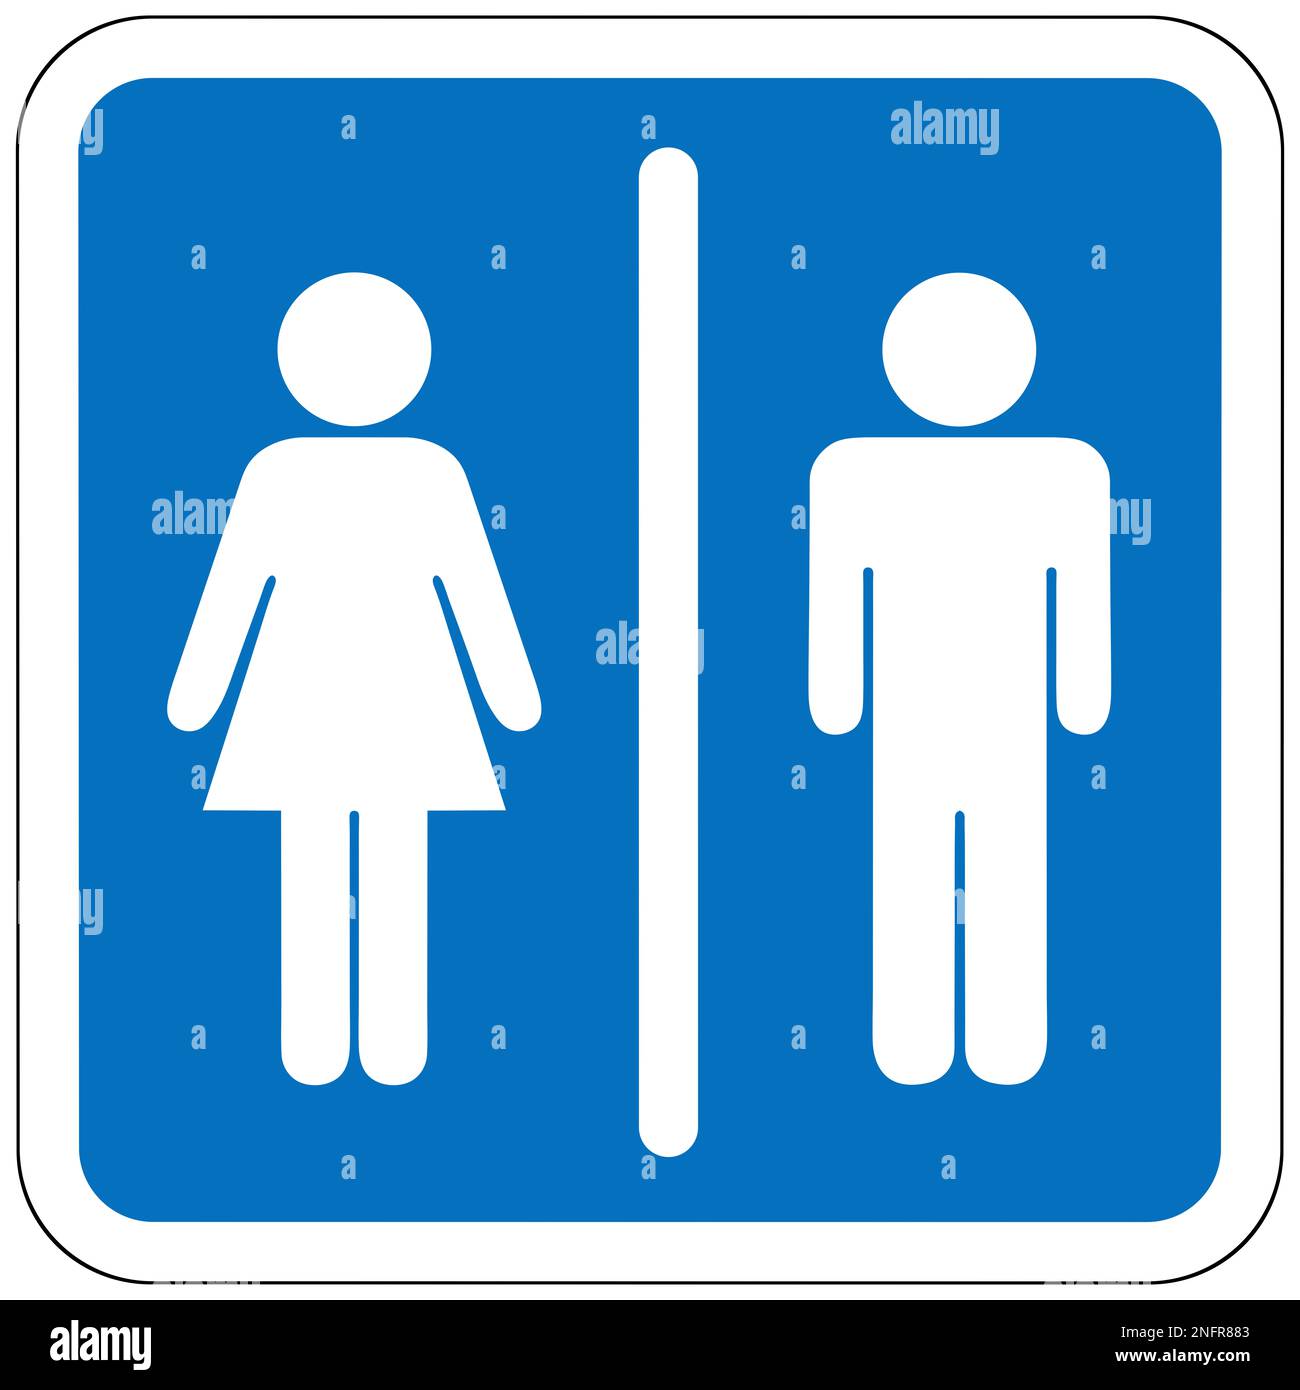 Cartel de baño de mujeres + flecha direccional